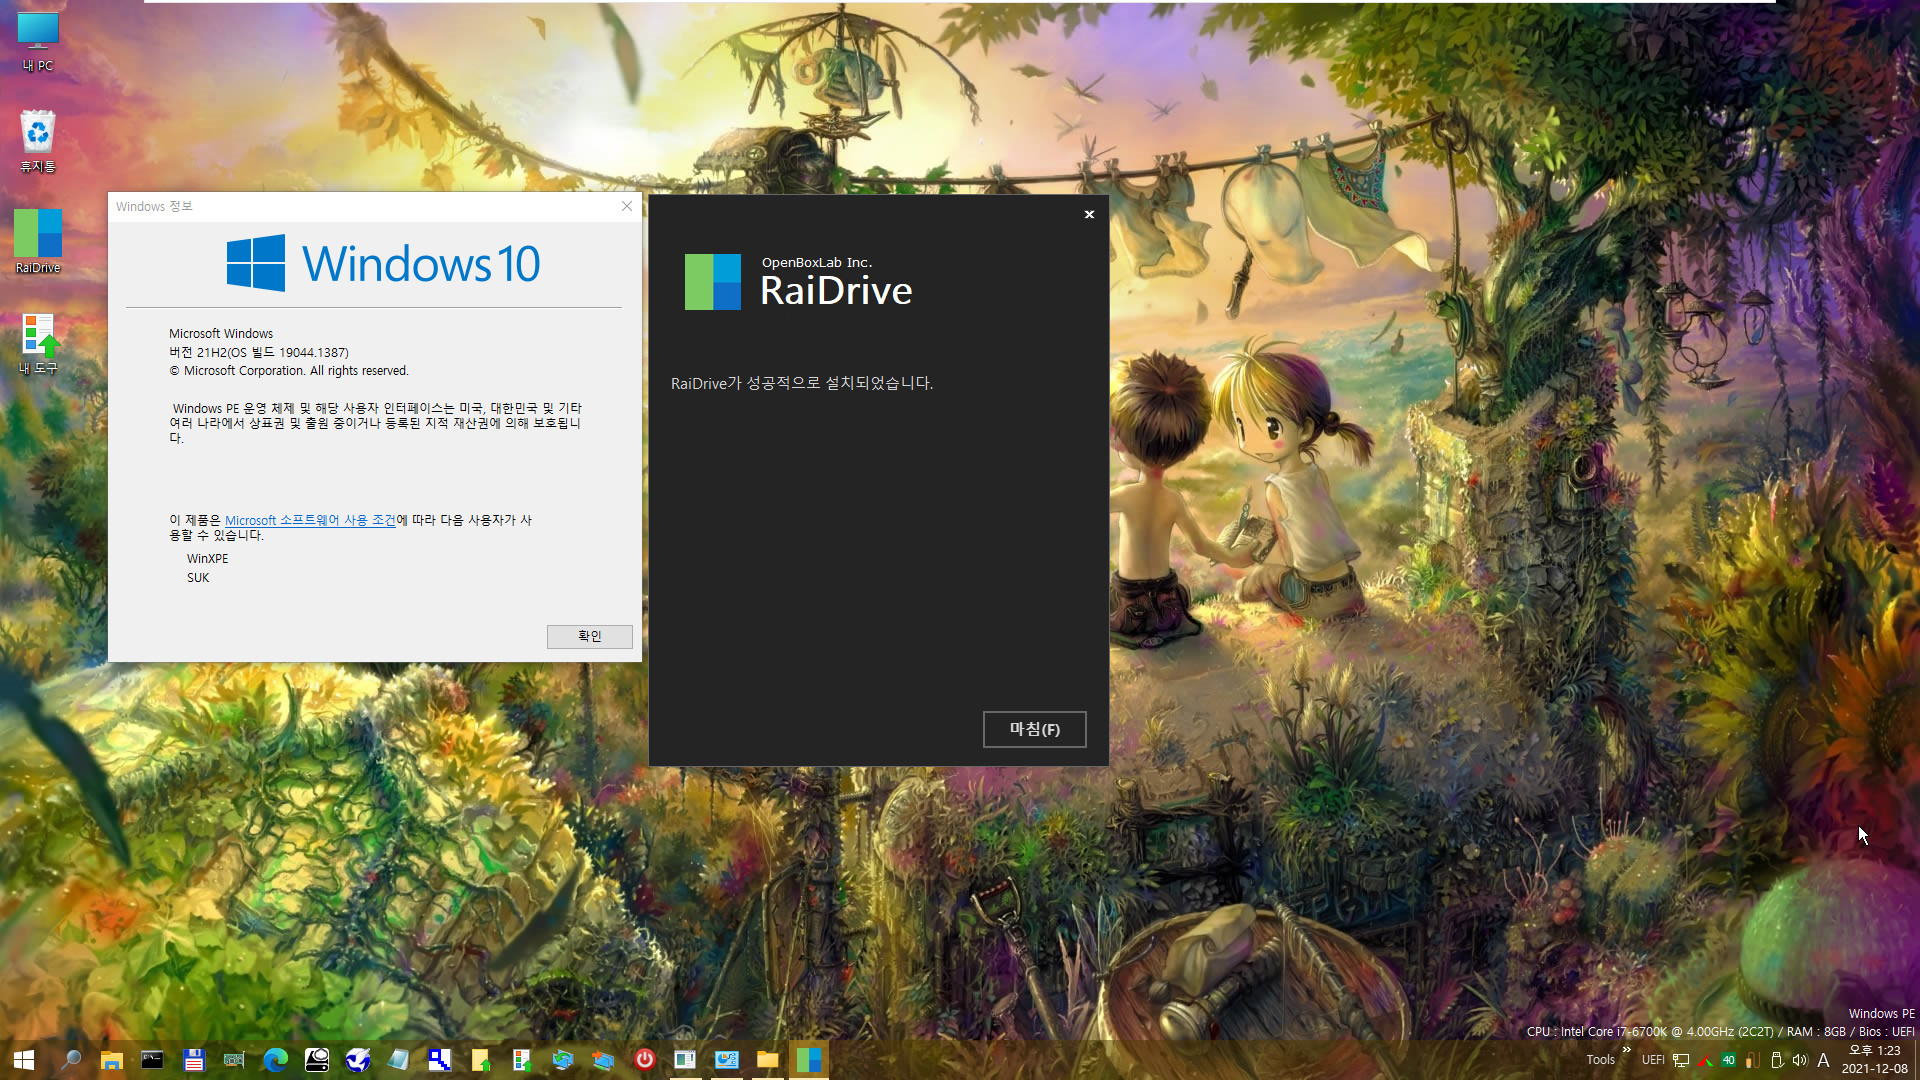 PE에서 RaiDrive 첫 설치 테스트 - WindowsXPE132 으로 Windows 10 (19044.1387) 통합본으로 PE 만들어서 테스트 - 여러번 시도하여 성공함 2021-12-08_132321.jpg